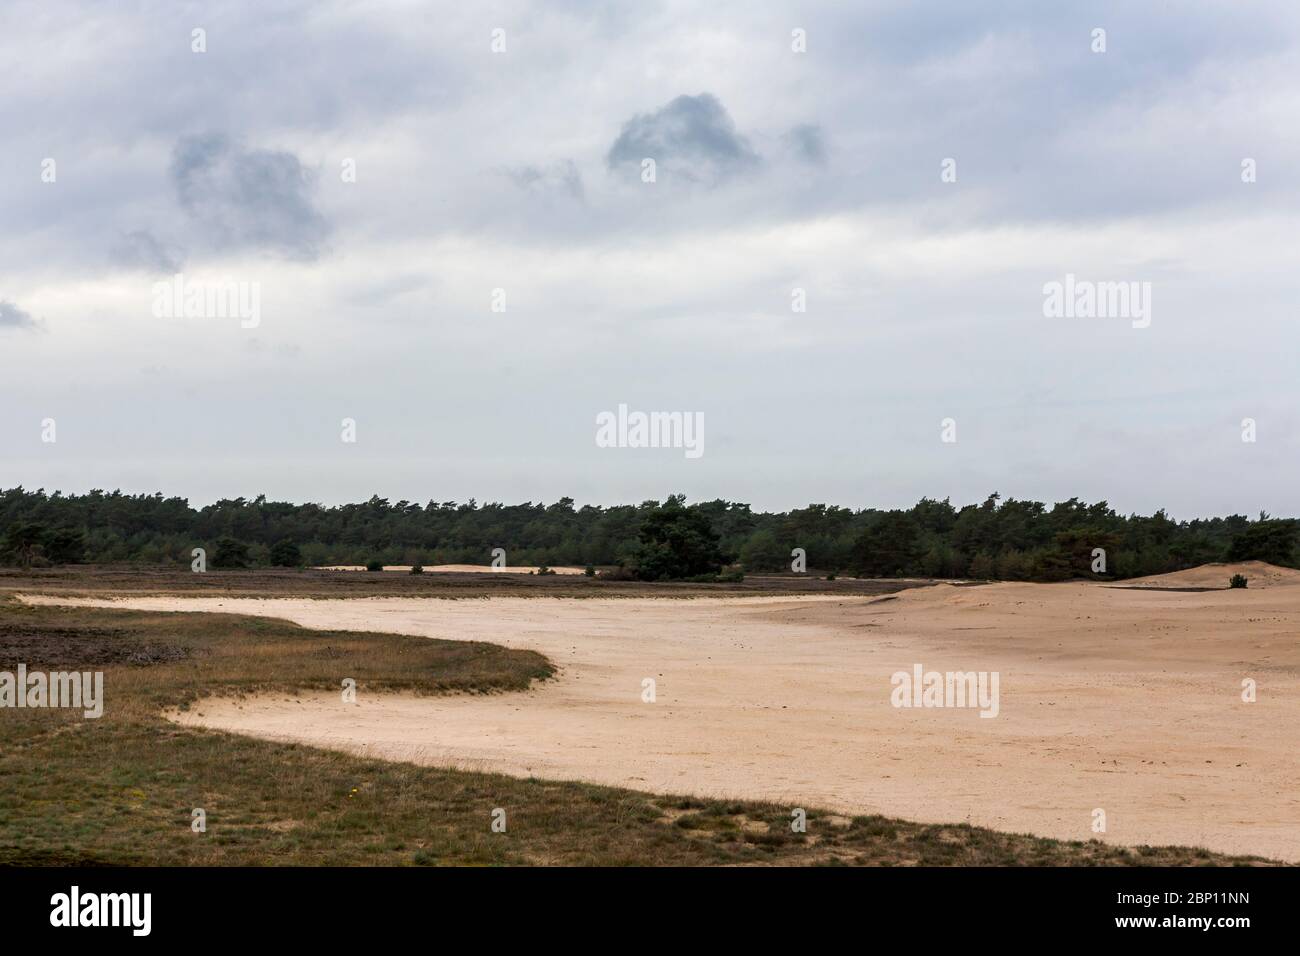 Otterlose Zand, extensive heathland in De Hoge Veluwe National Park, Gelderland, Netherlands Stock Photo